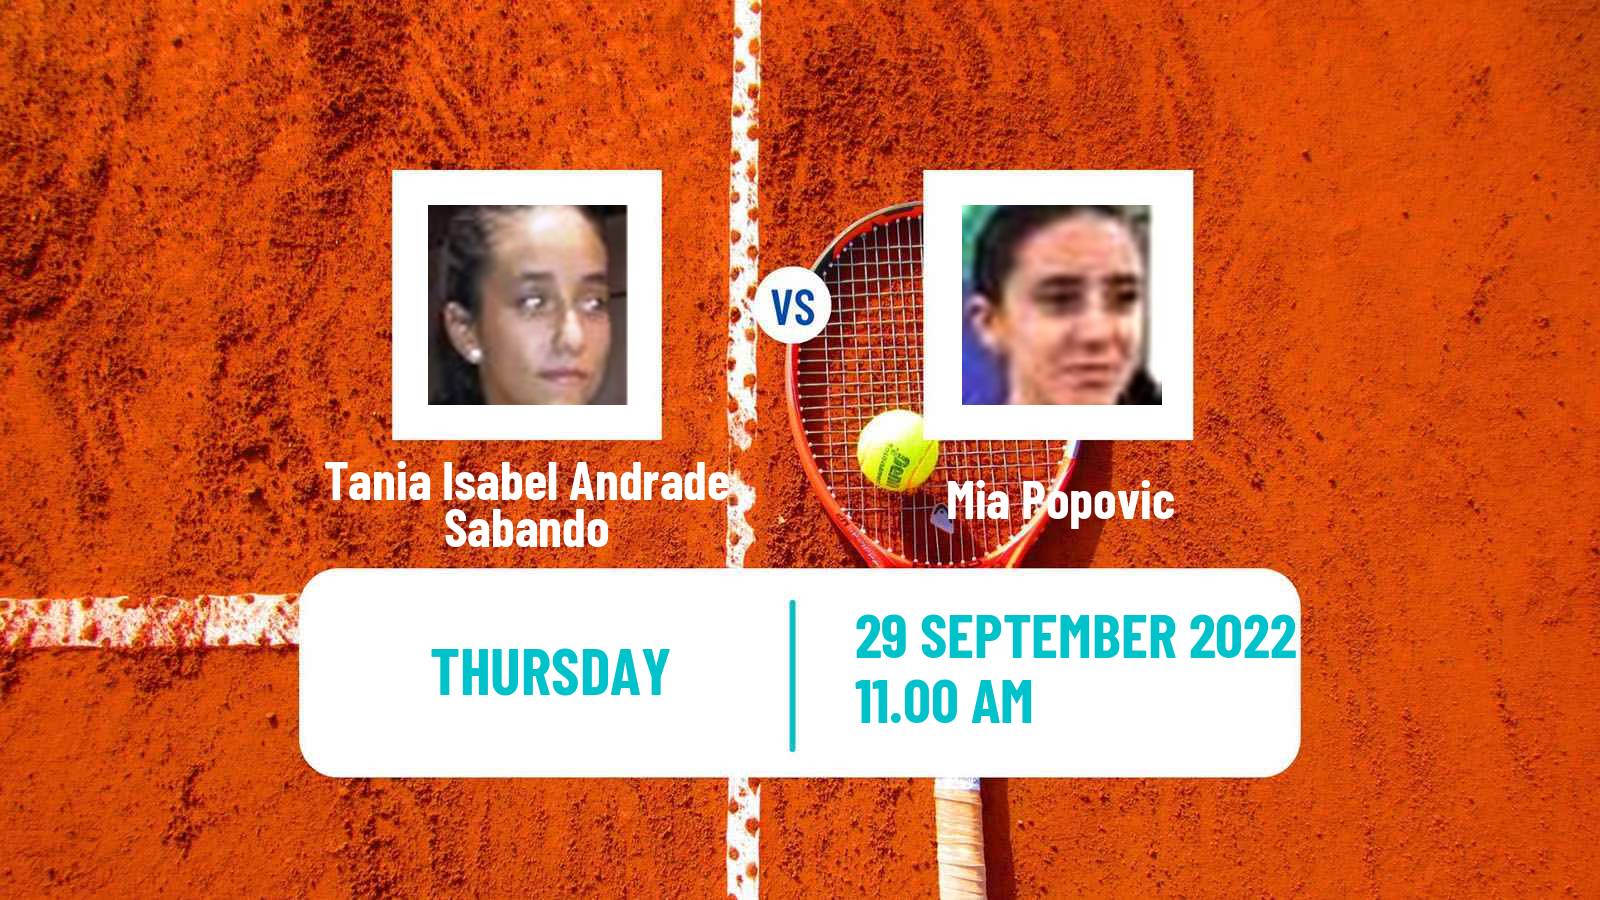 Tennis ITF Tournaments Tania Isabel Andrade Sabando - Mia Popovic